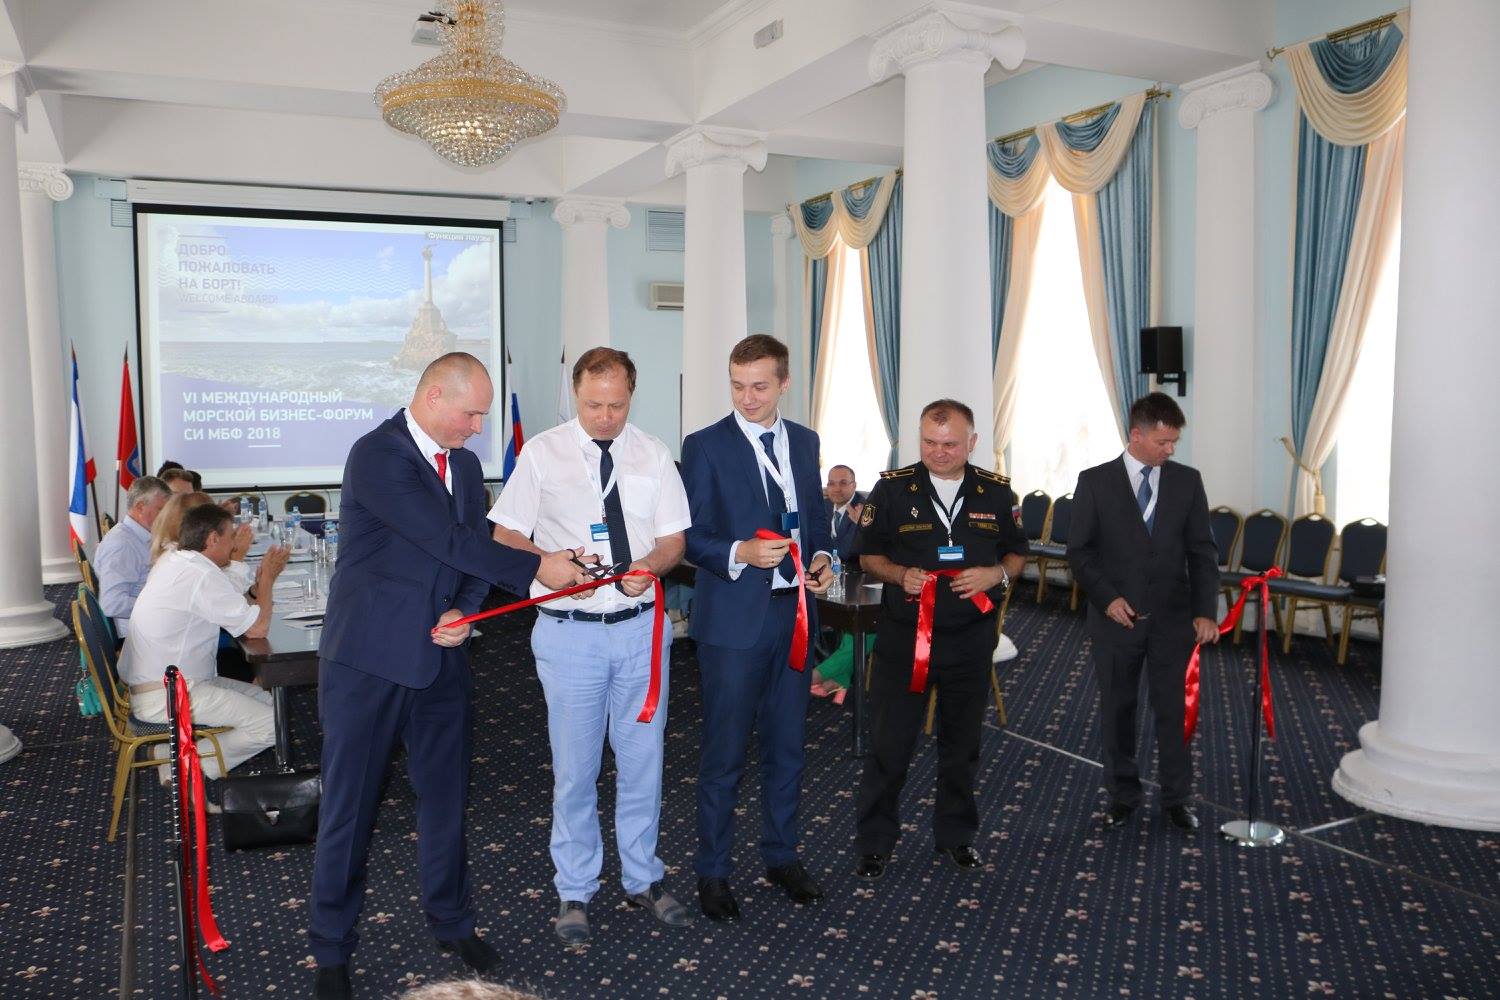 Международный морской бизнес-форум СИМБФ 2018 начал работу в Севастополе